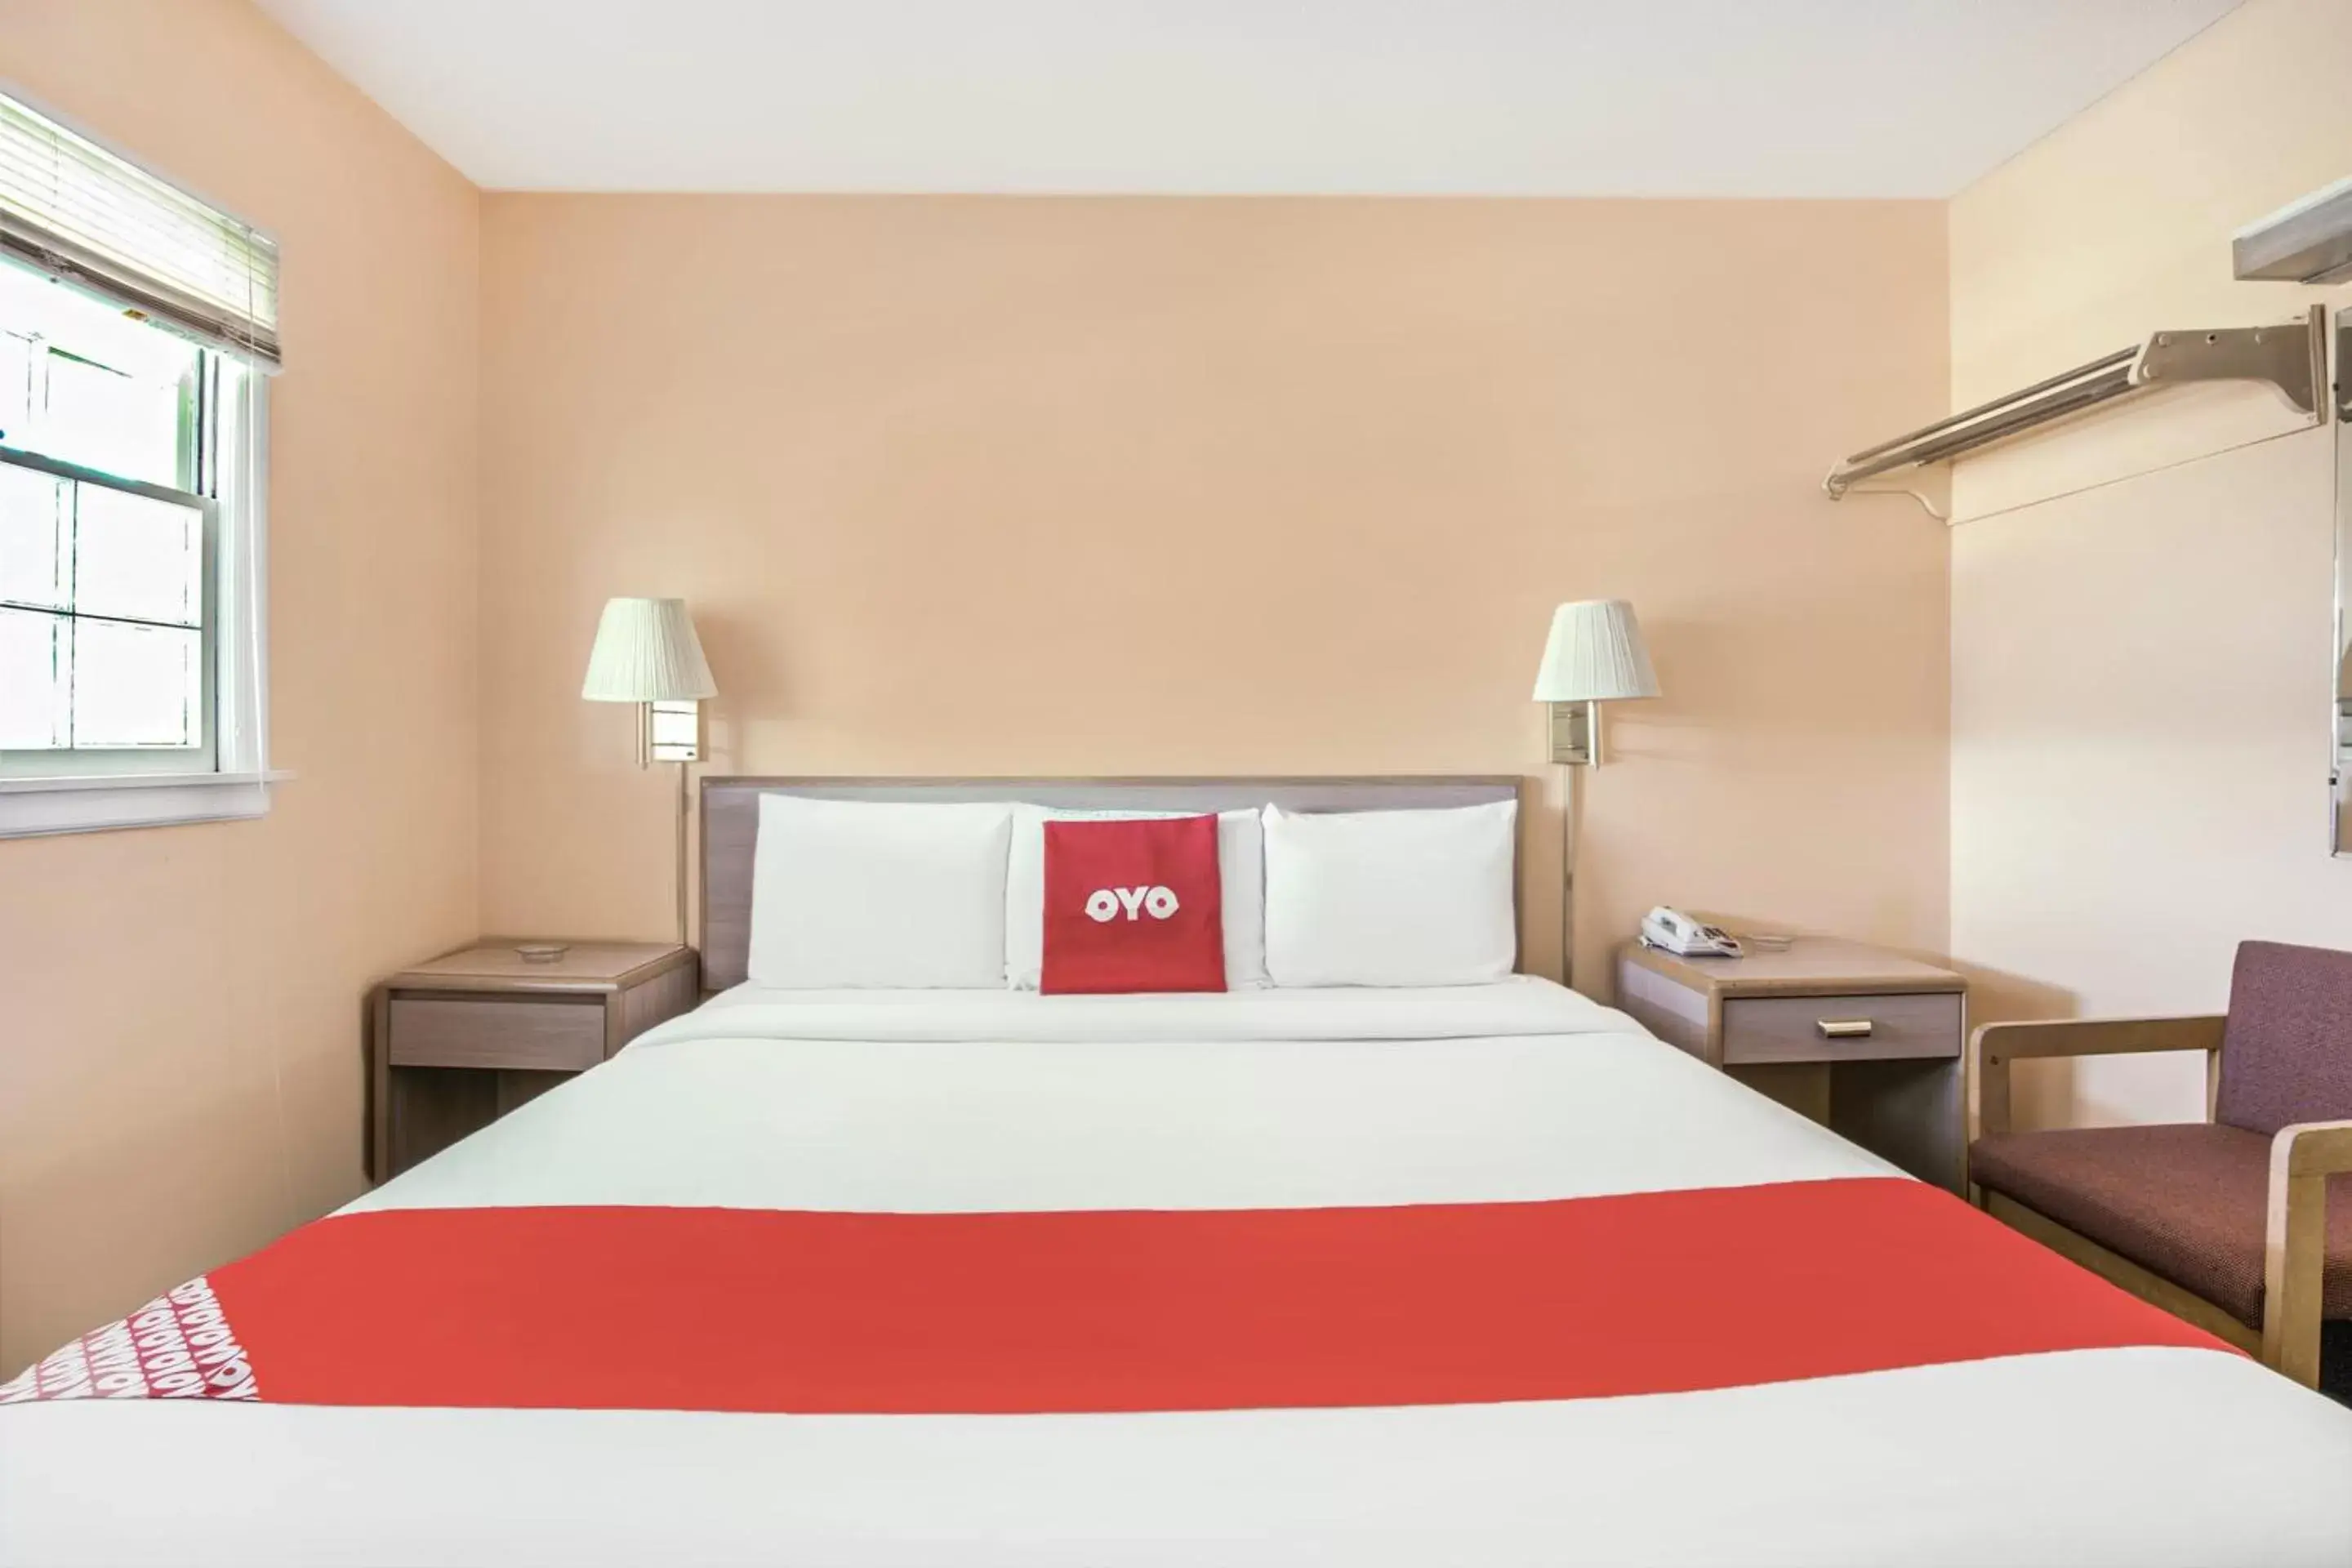 Bedroom, Bed in OYO Hotel Durham West Hills